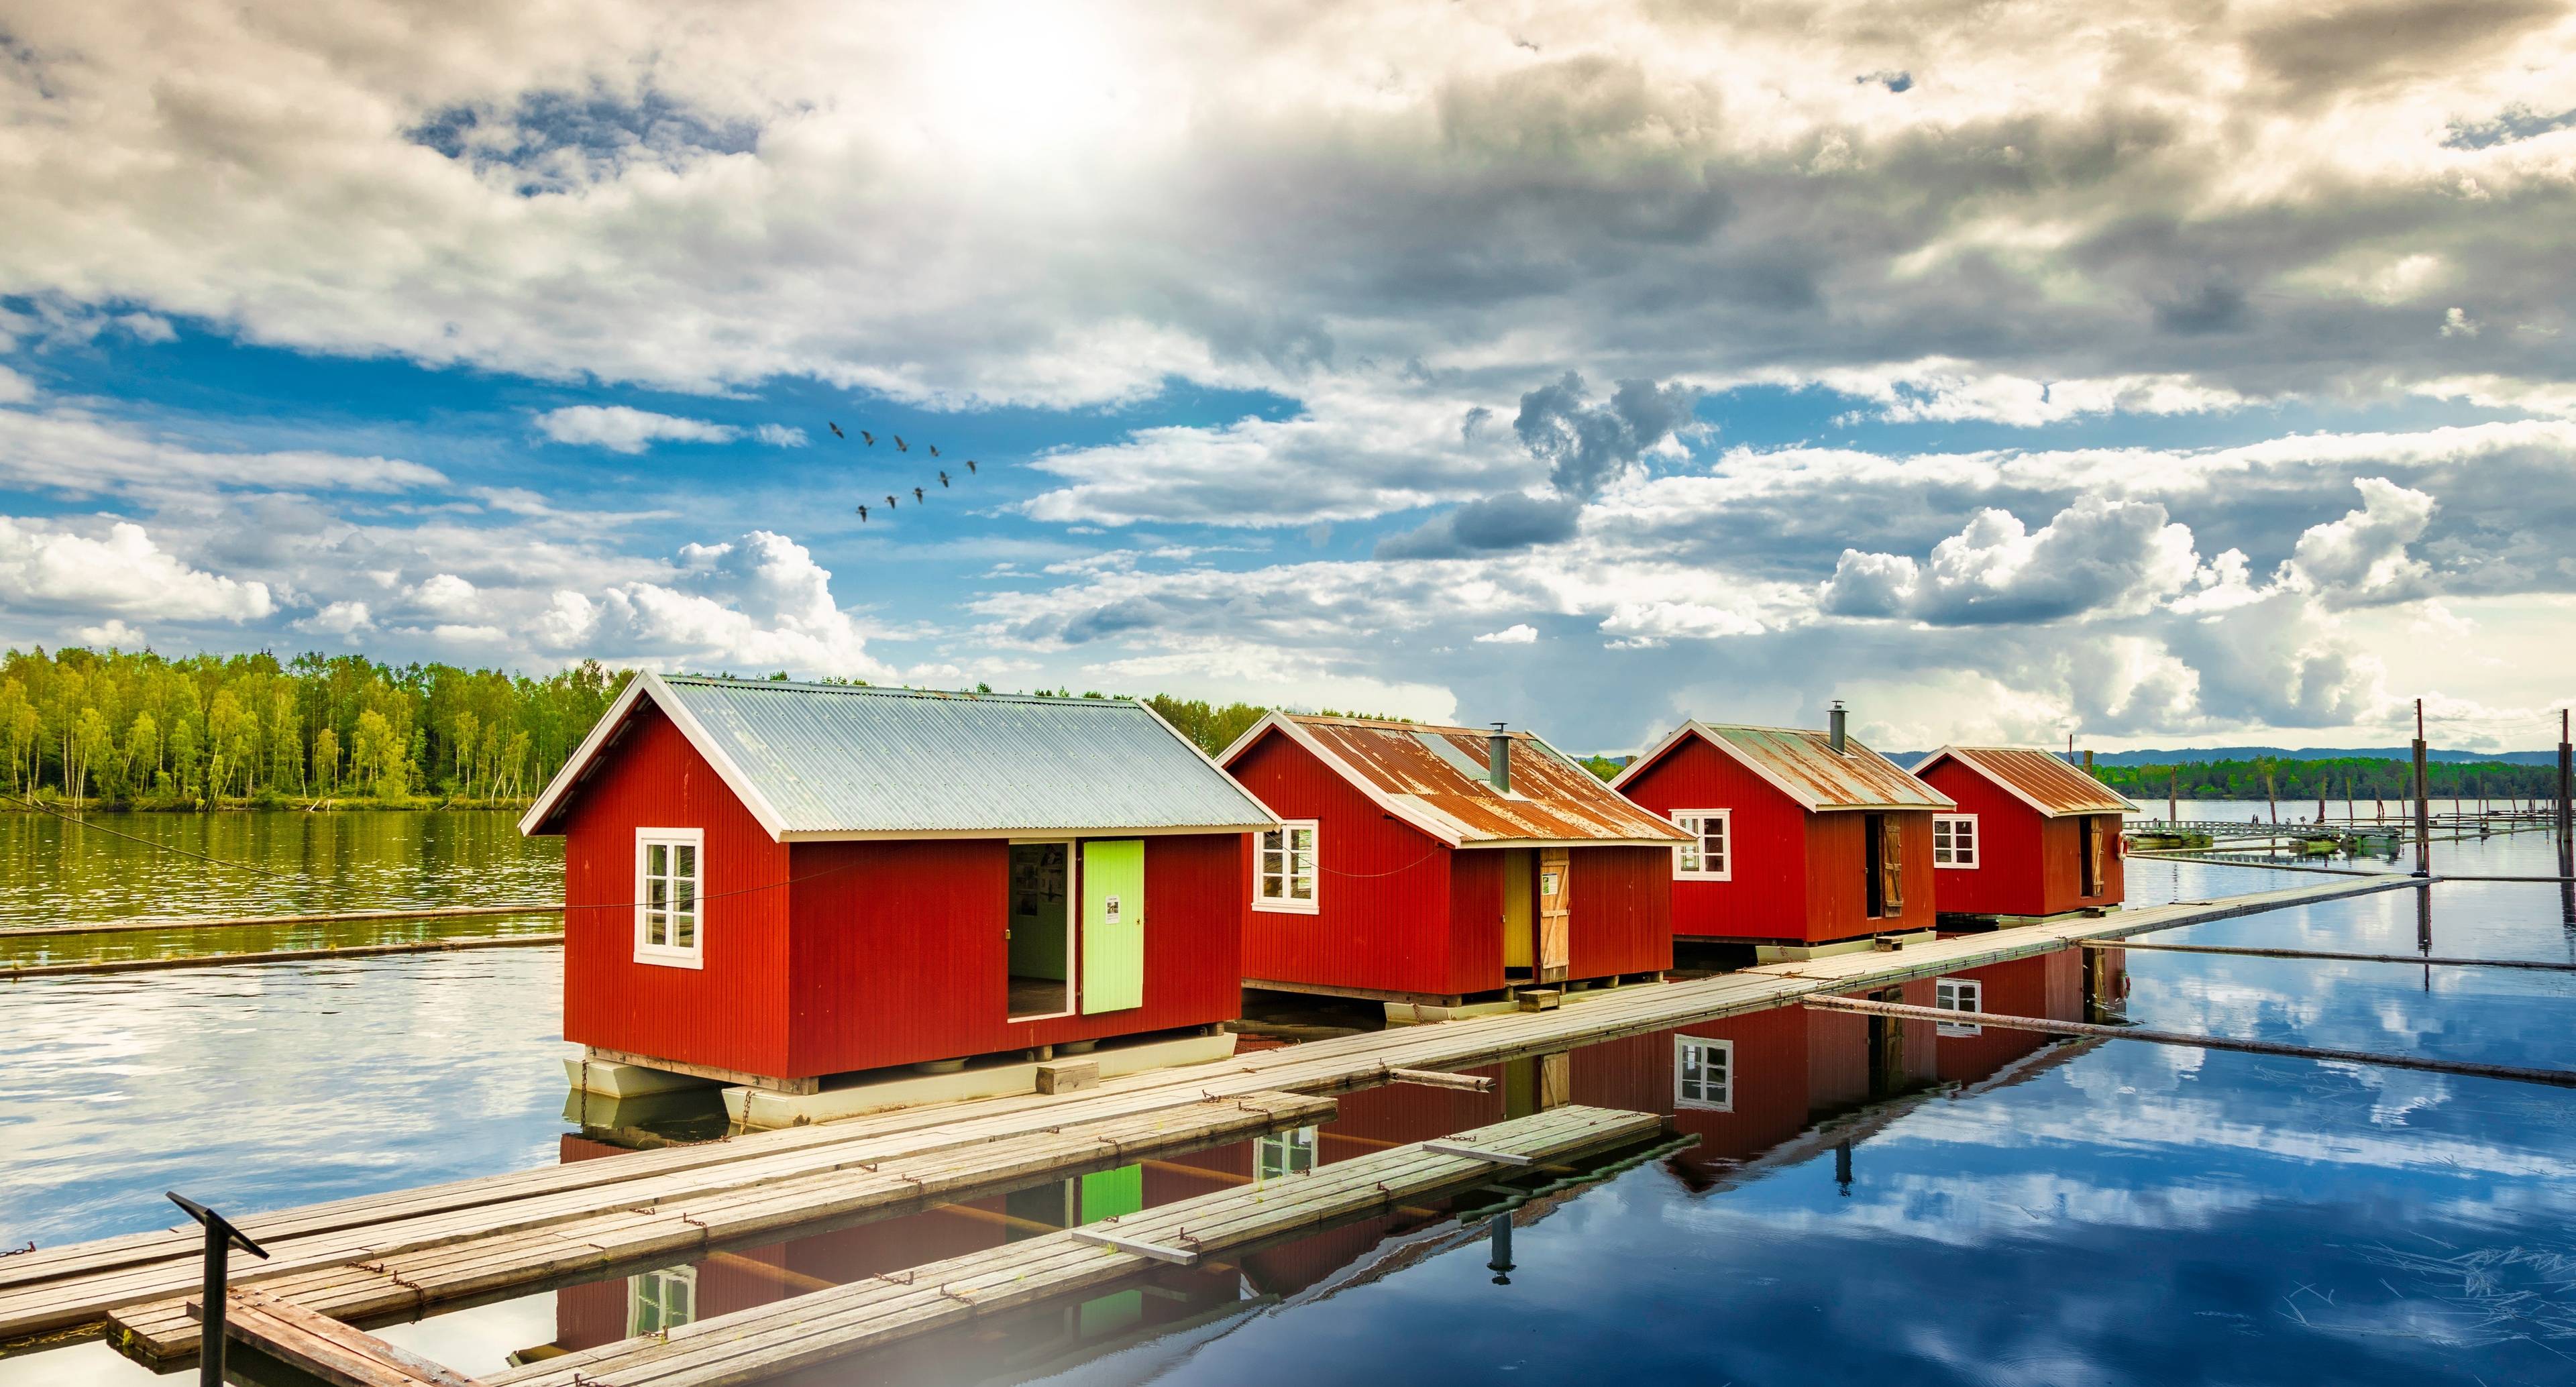 Avventura vivace attraverso il paese norvegese e siti rinfrescanti